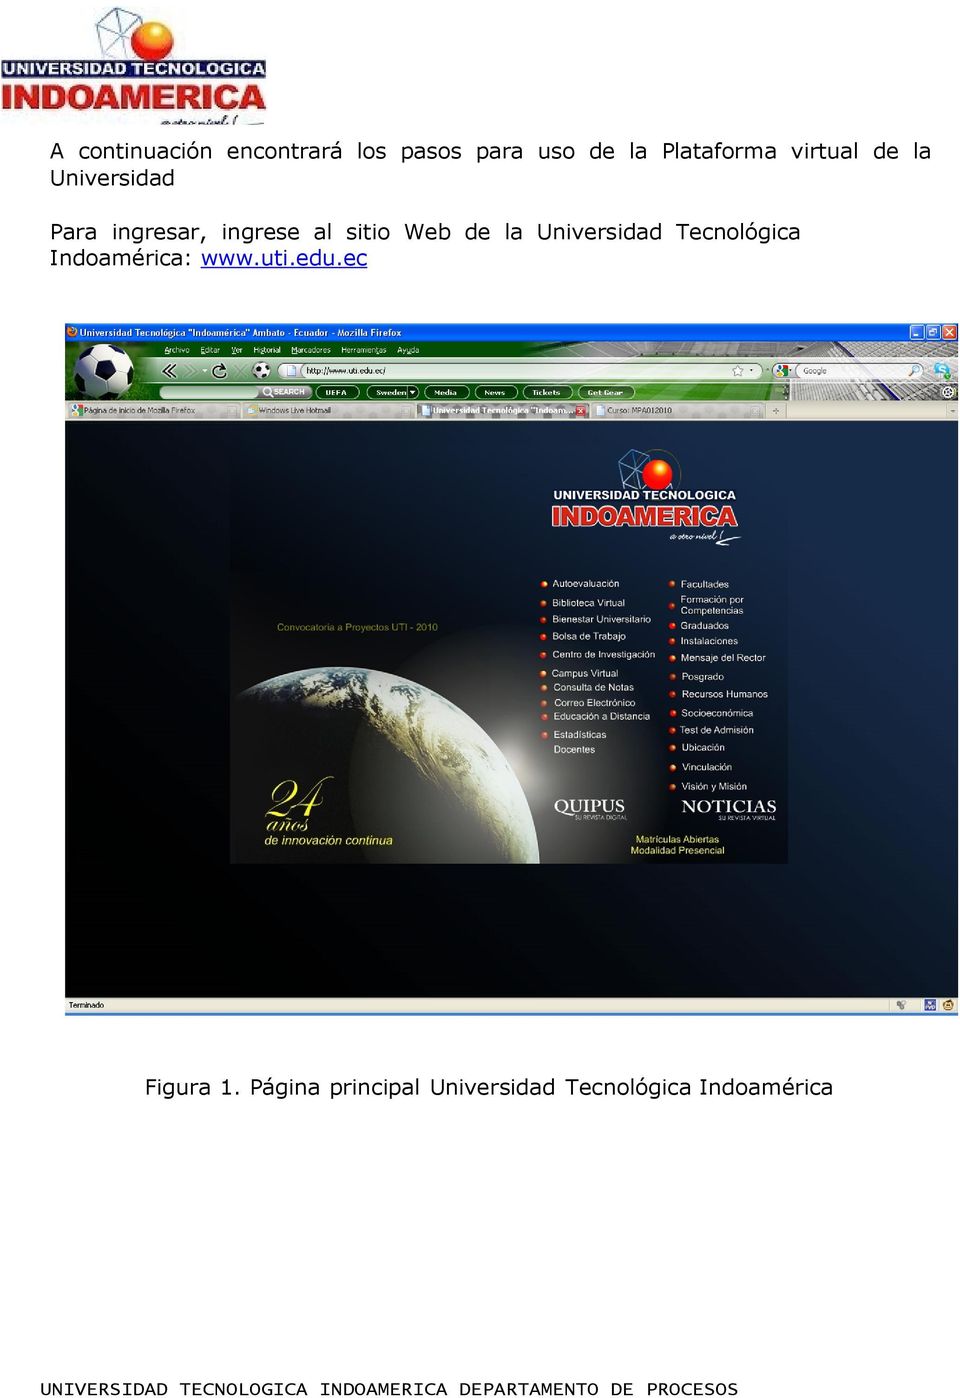 al sitio Web de la Universidad Tecnológica Indoamérica: www.